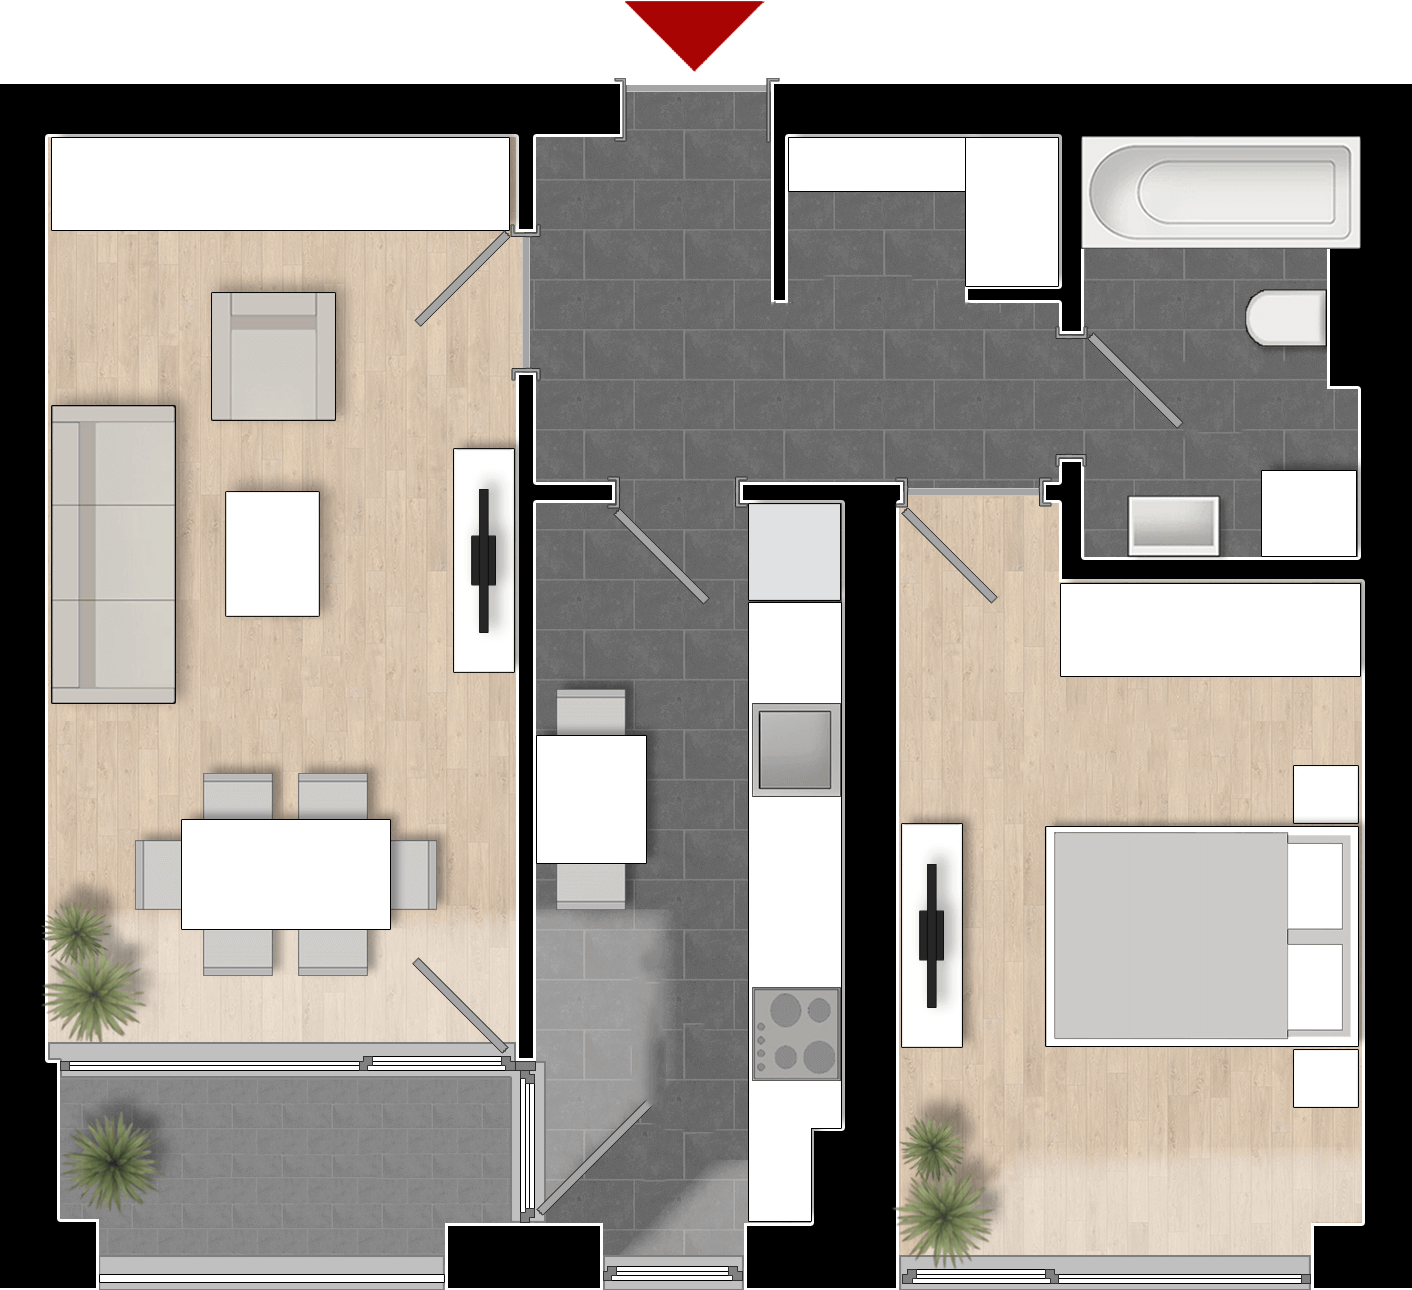  Apartament 802, Tip de apartament 2A cu 2 camere 